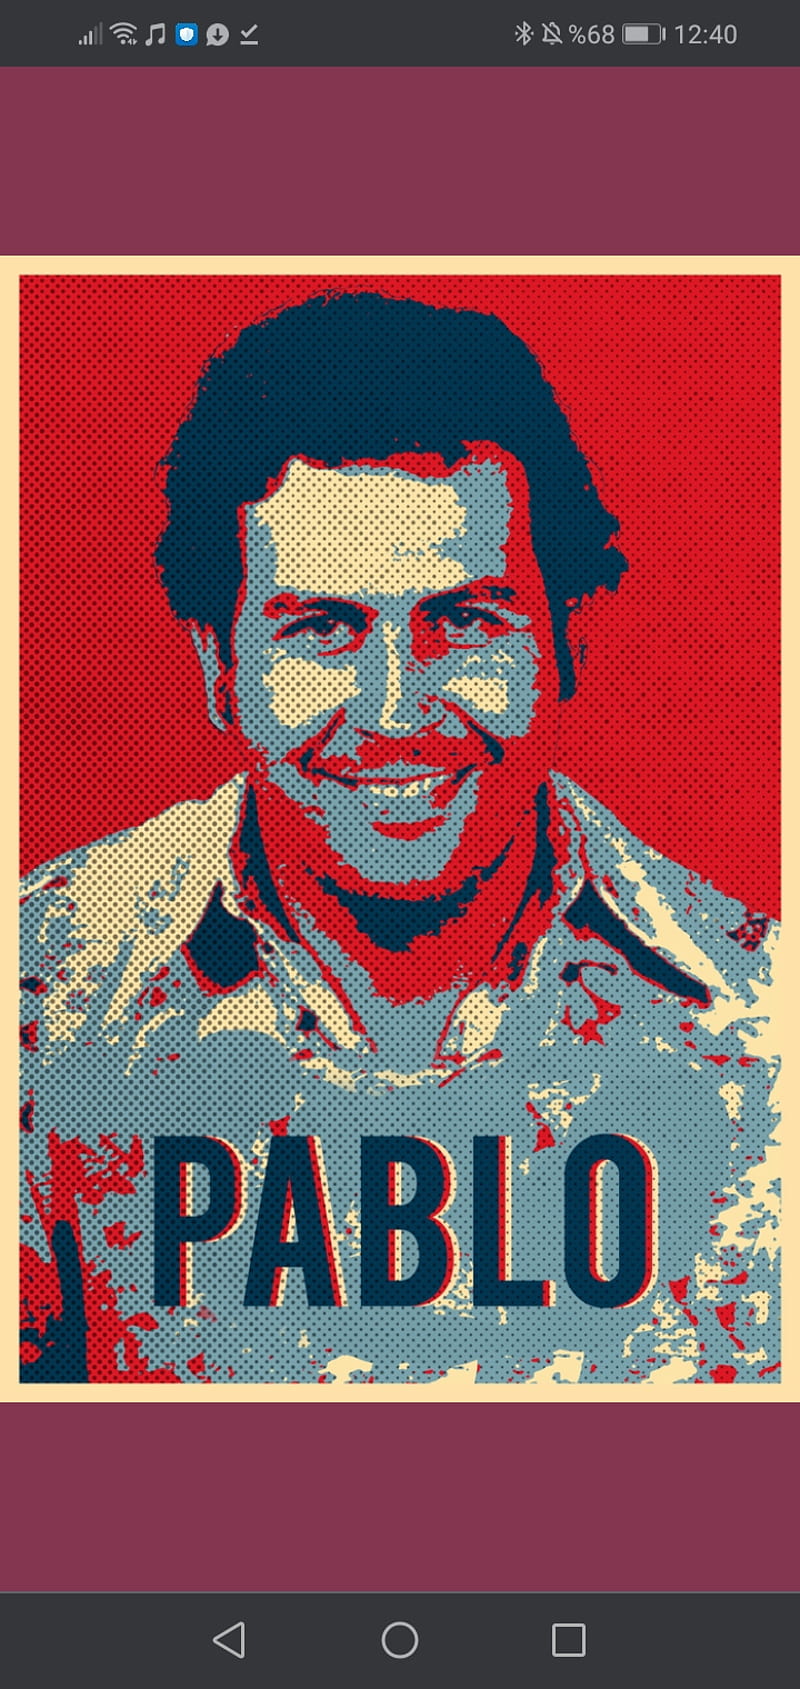 PABLO ESCOBAR , el patron, narcos, pablo escobar, HD phone wallpaper